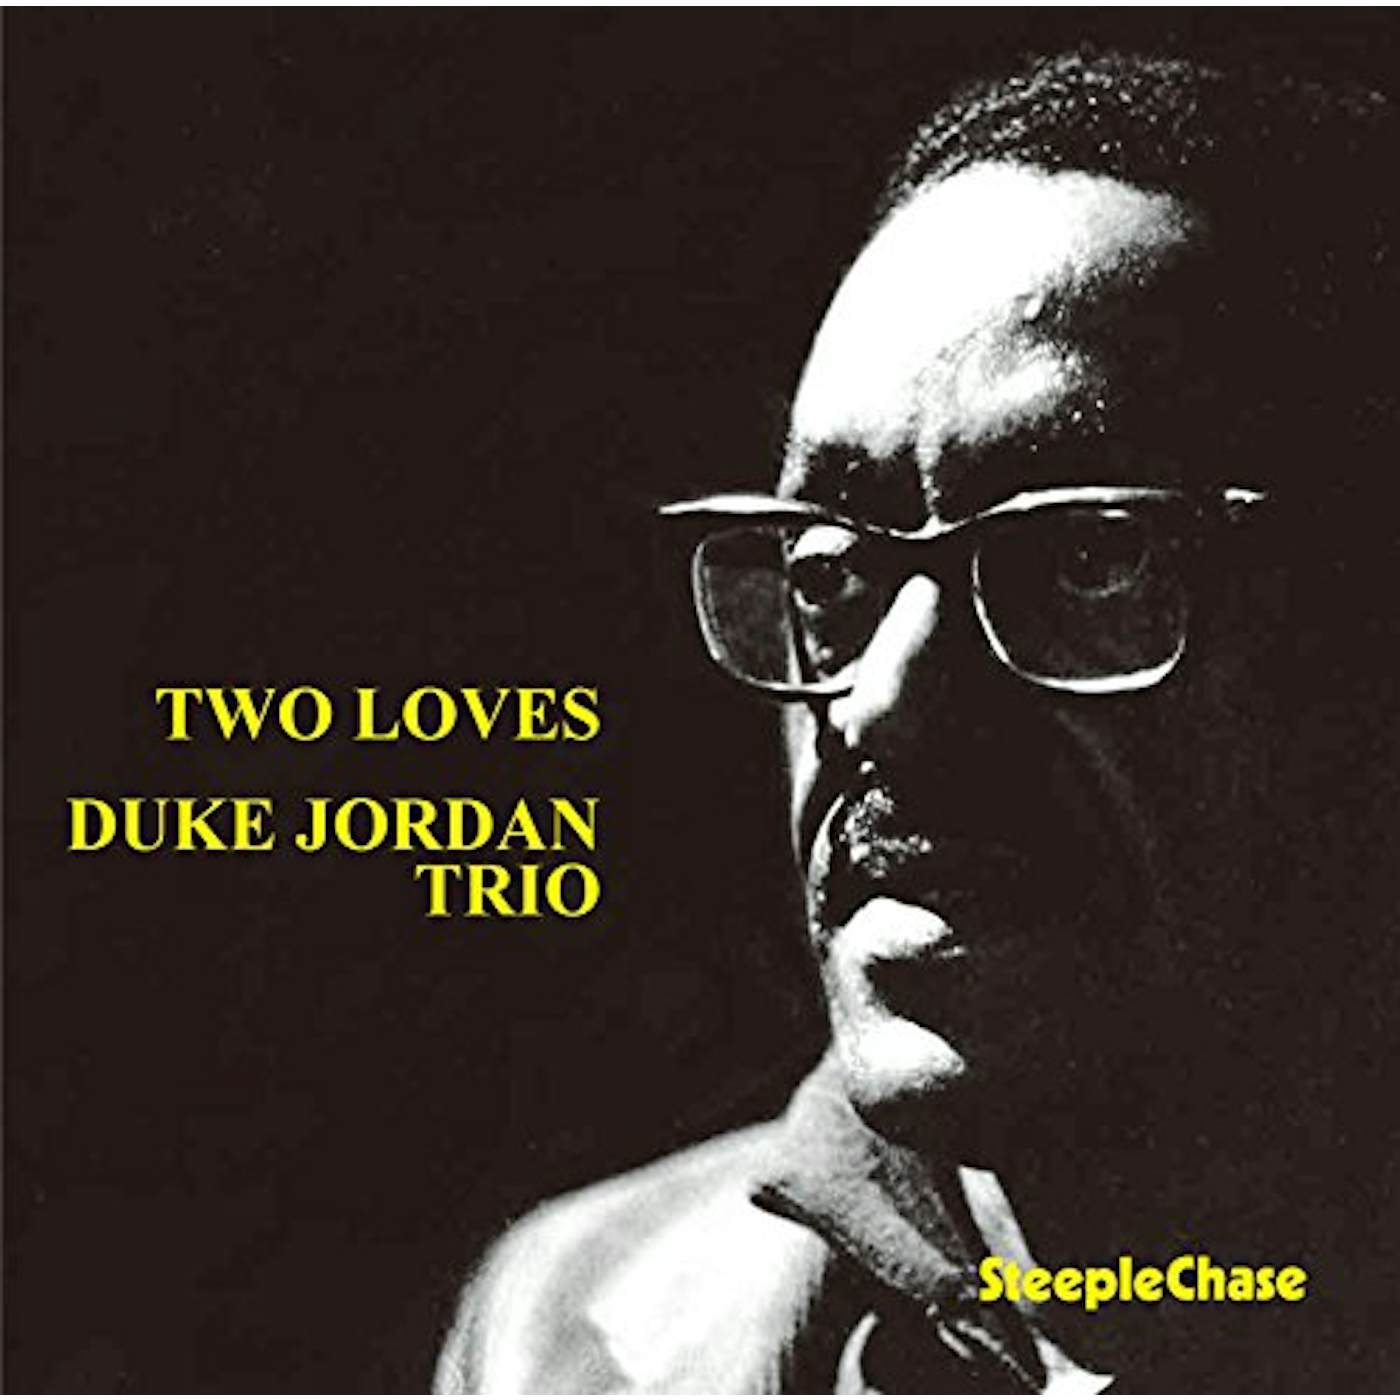 Duke Jordan TWO LOVES CD